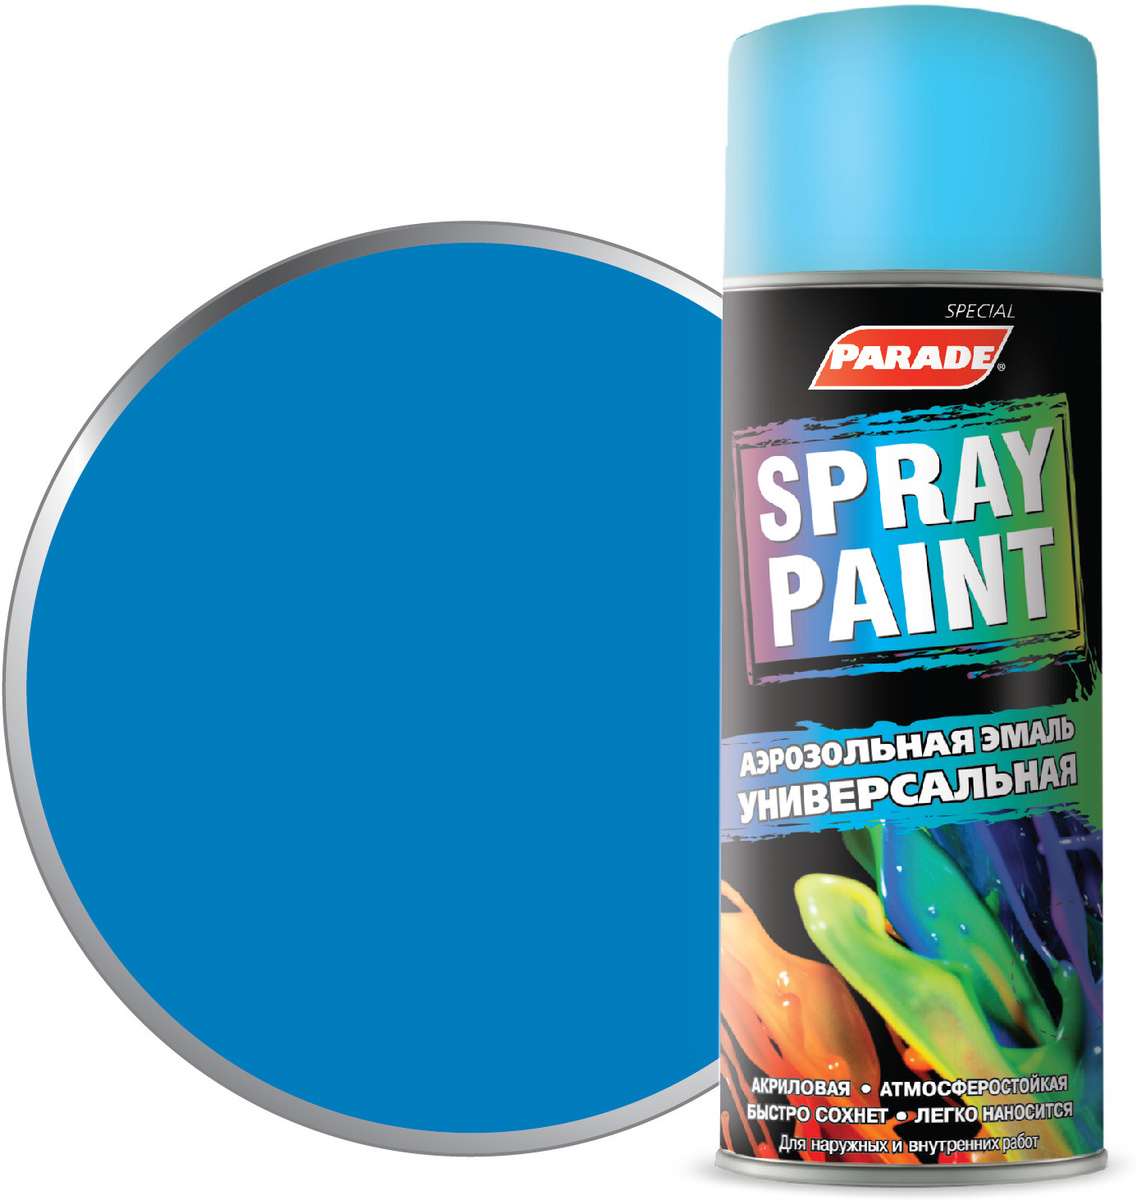  Parade Spray Paint, аэрозольная, 15, Акриловая, 0.4 л, голубой .